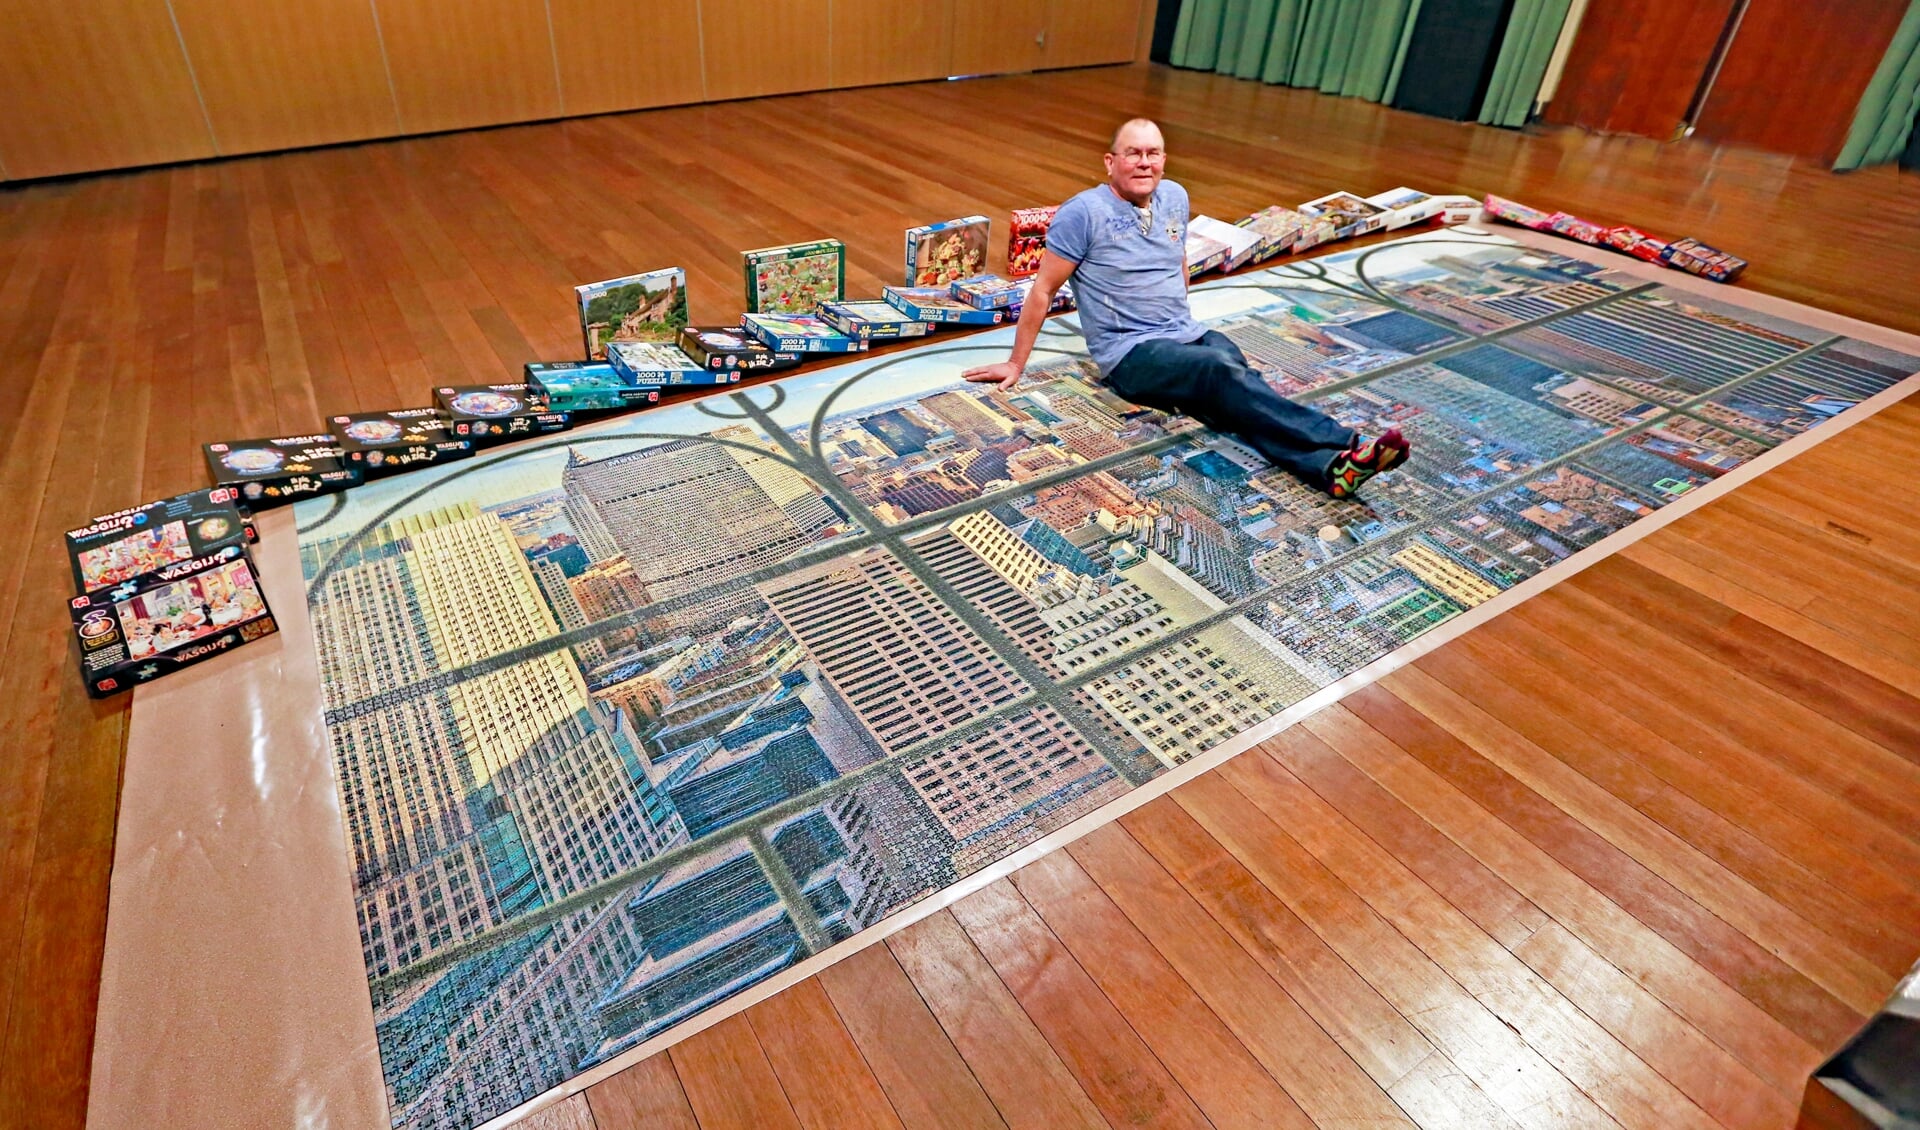 Cees poseert op zijn puzzel van 24.000 stukjes. De puzzels eromheen zijn te leen.